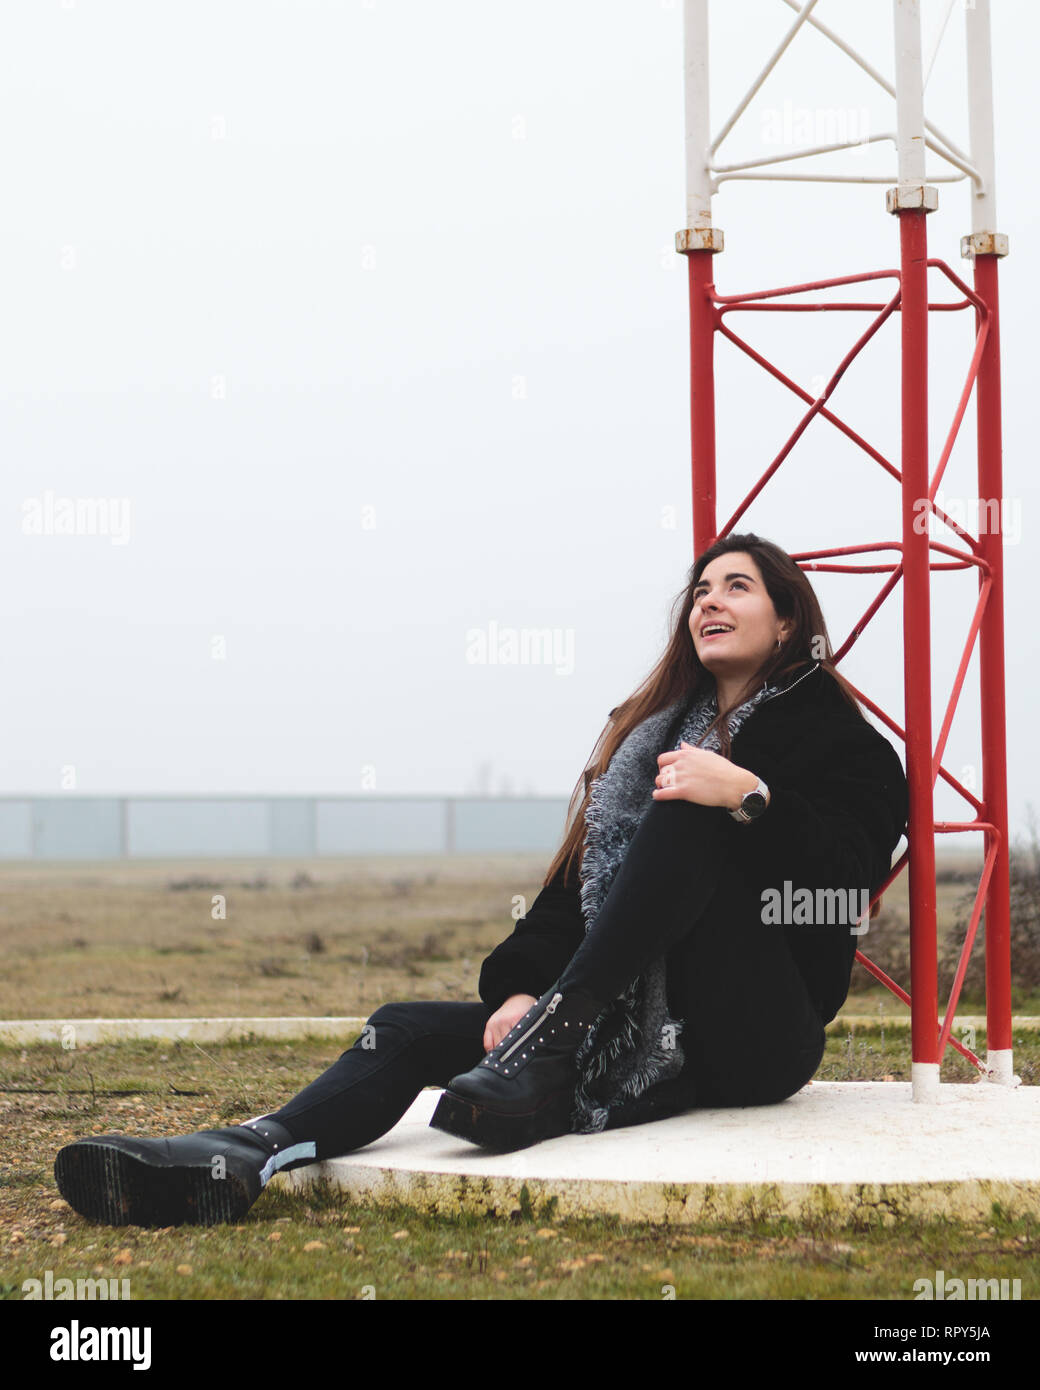 Belle Jeune femme assise sur le sol dans un petit aéroport à dans un petit aéroport dans un paysage rural. Jolie femme en riant et smili Banque D'Images